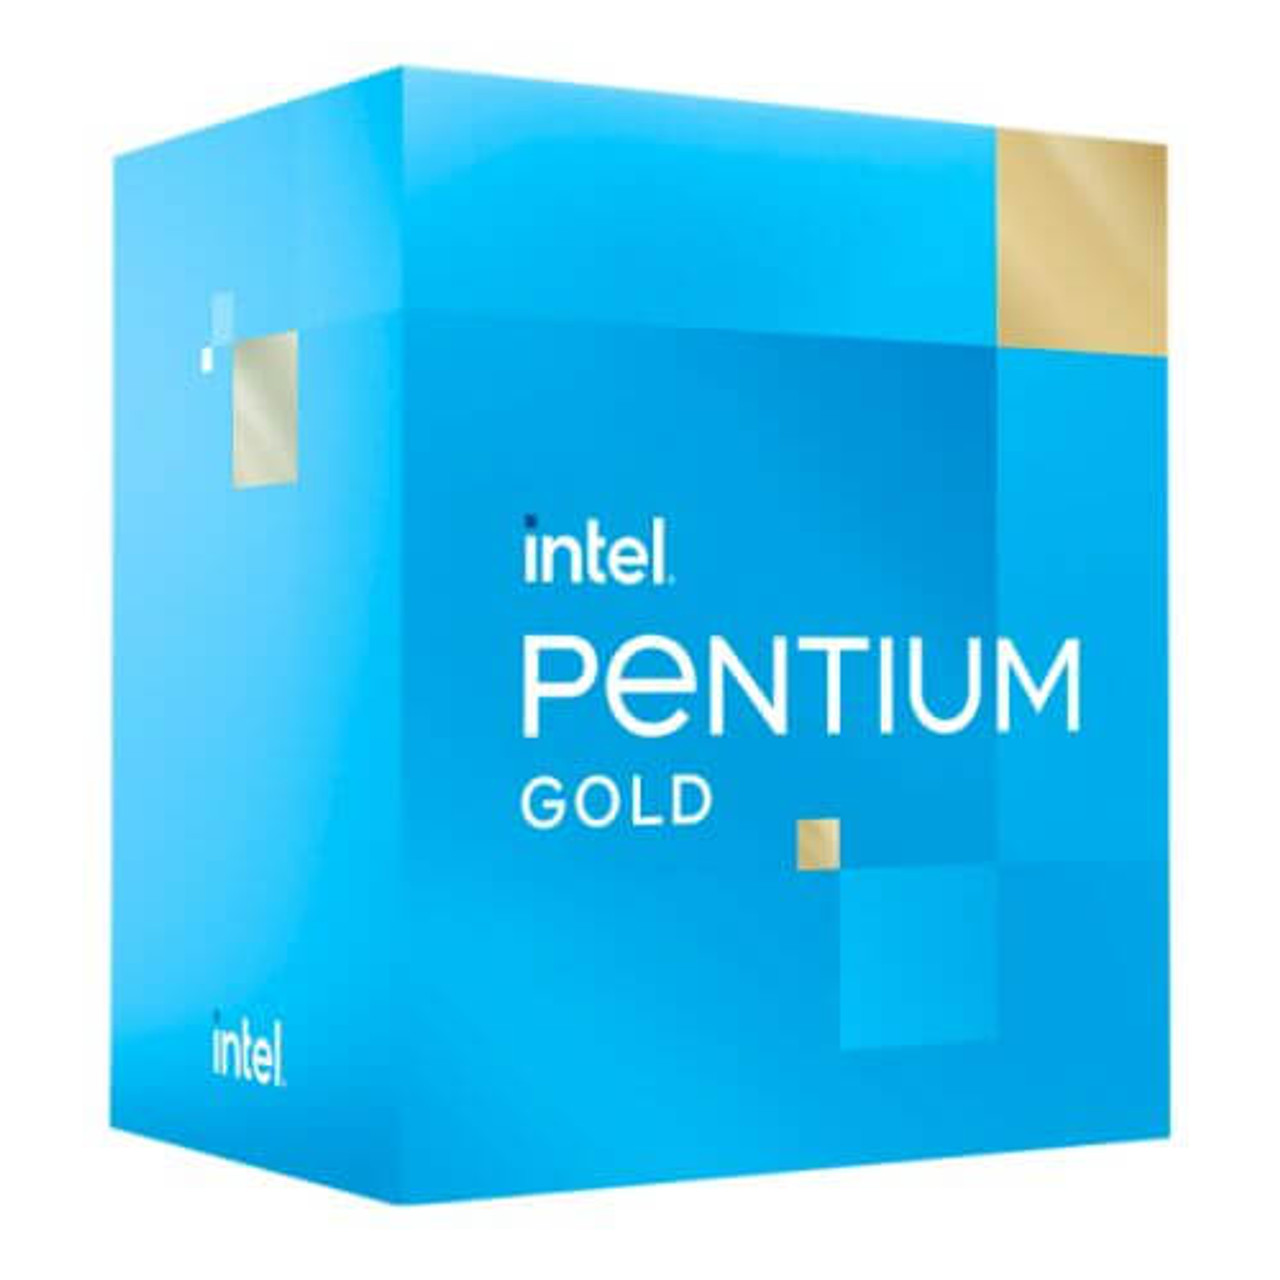 Intel Pentium Gold G7400 CPU, 1700, 3.7 GHz, Dual Core, 46W, 6MB 